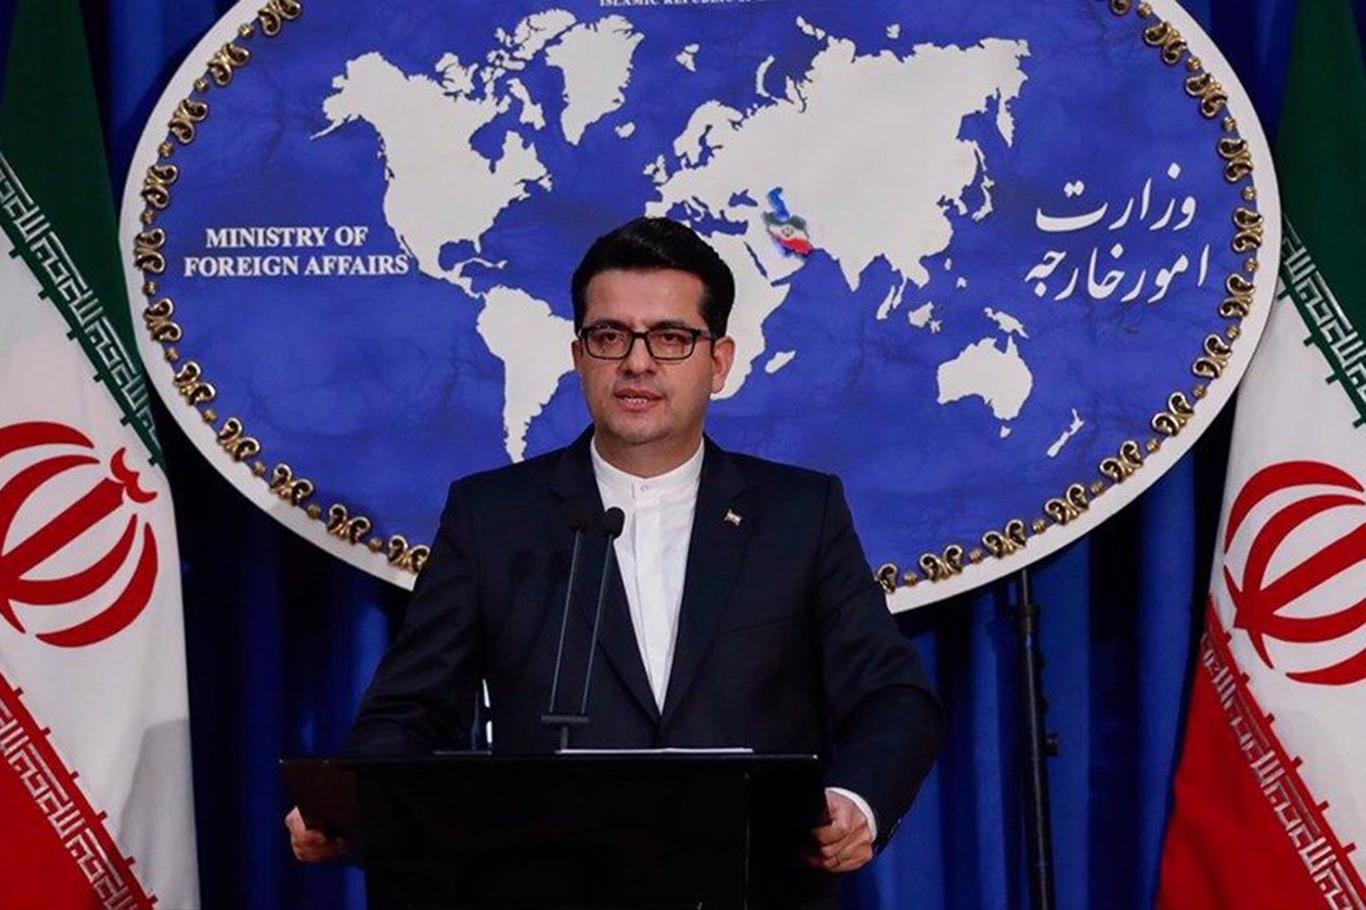 İran: Nükleer programlara yaptırım uygulanması, BM 2231 sayılı kararının açık ihlalidir